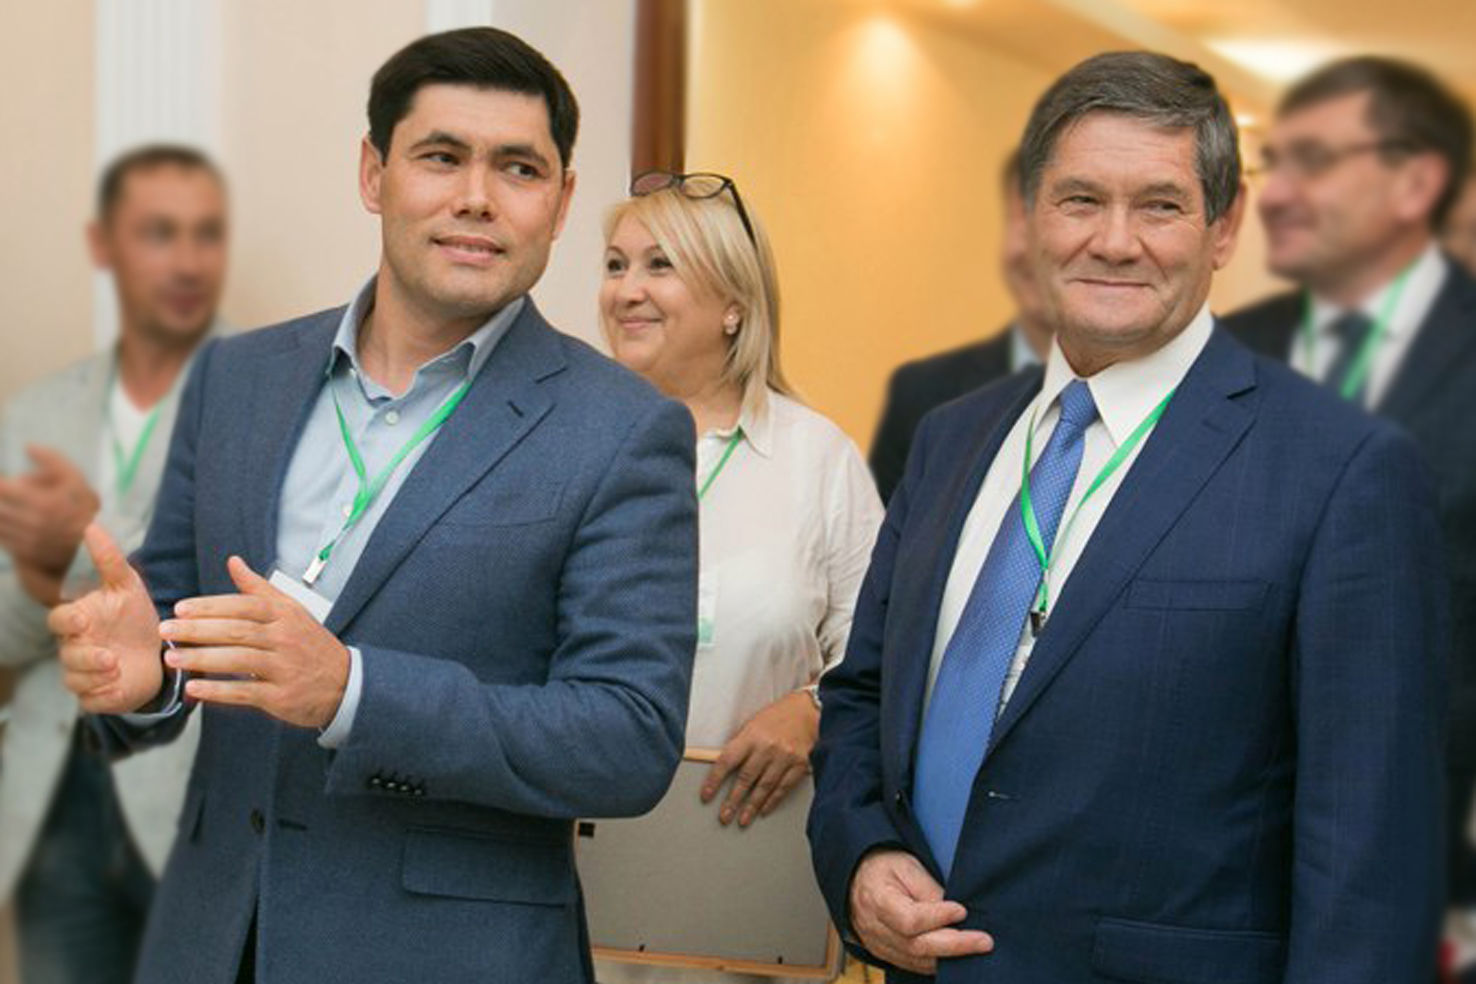 Фонд "БлагоДарение" вдохнул новую жизнь в Топасево